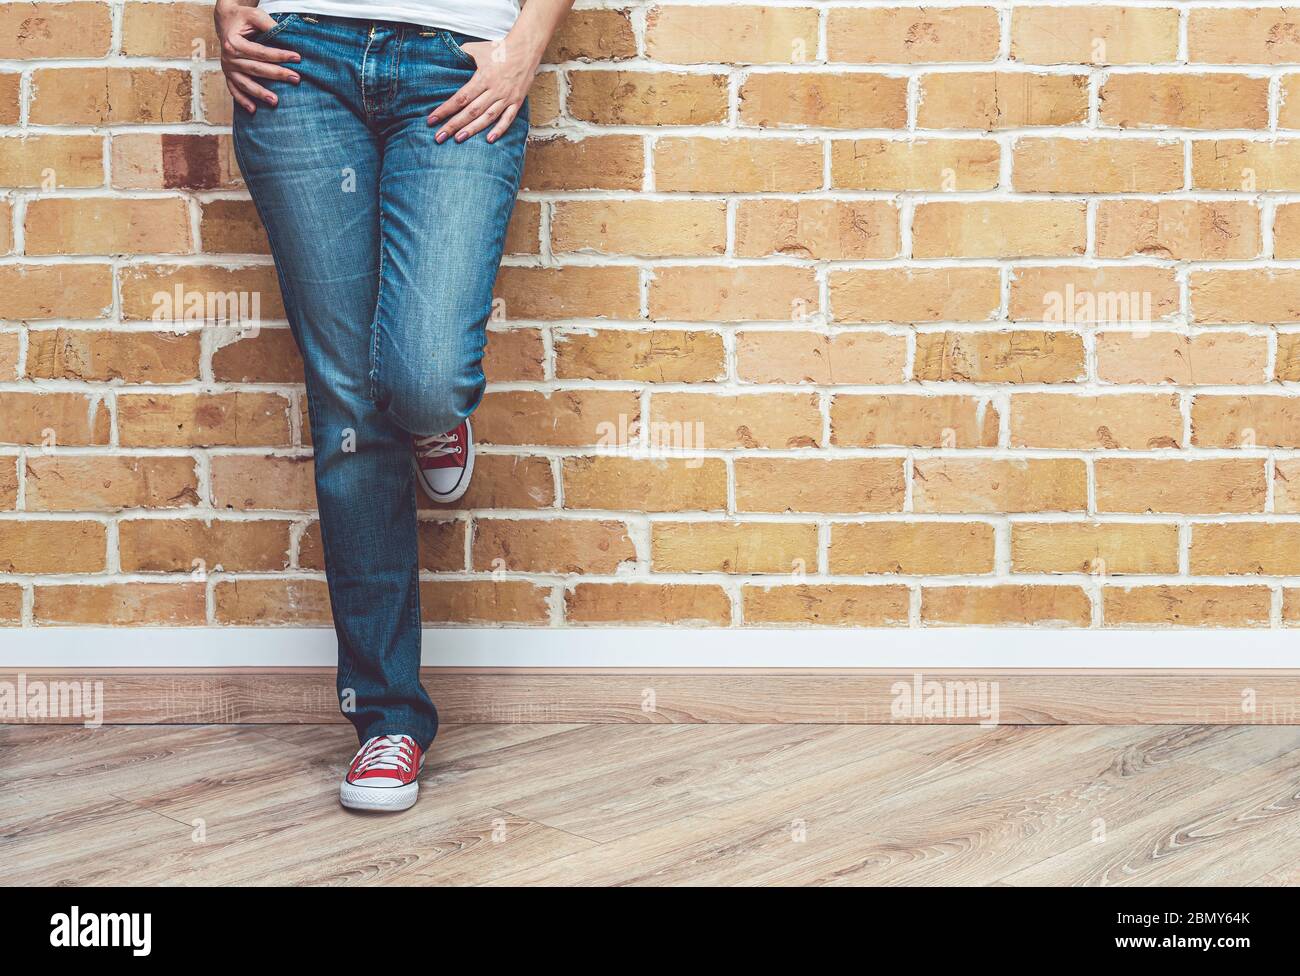 Mujer piernas en jeans y zapatillas de deporte rojas, mujer de pie frente la pared de ladrillo, concepto de Fotografía de -